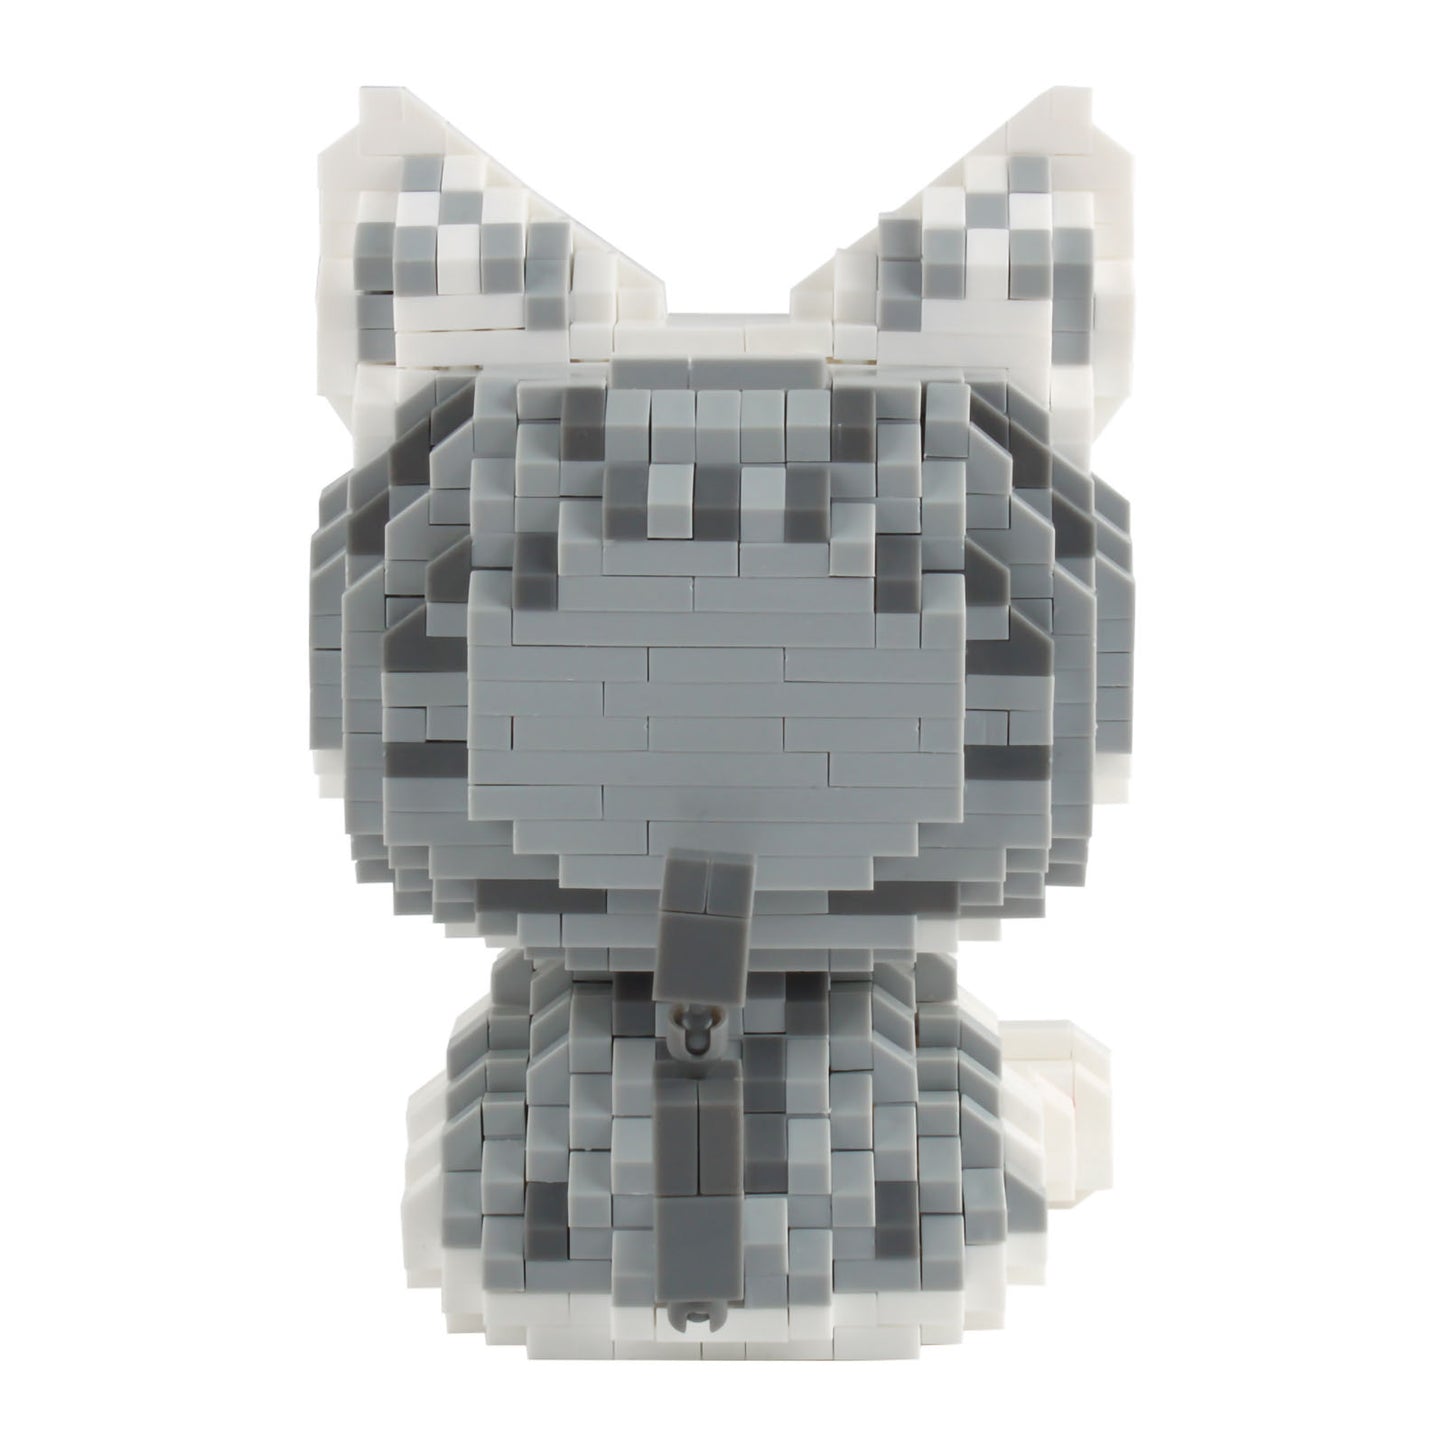 Larcele Cat Building Toy Bricks,1033 Pieces KLJM-02 (Model 2285)